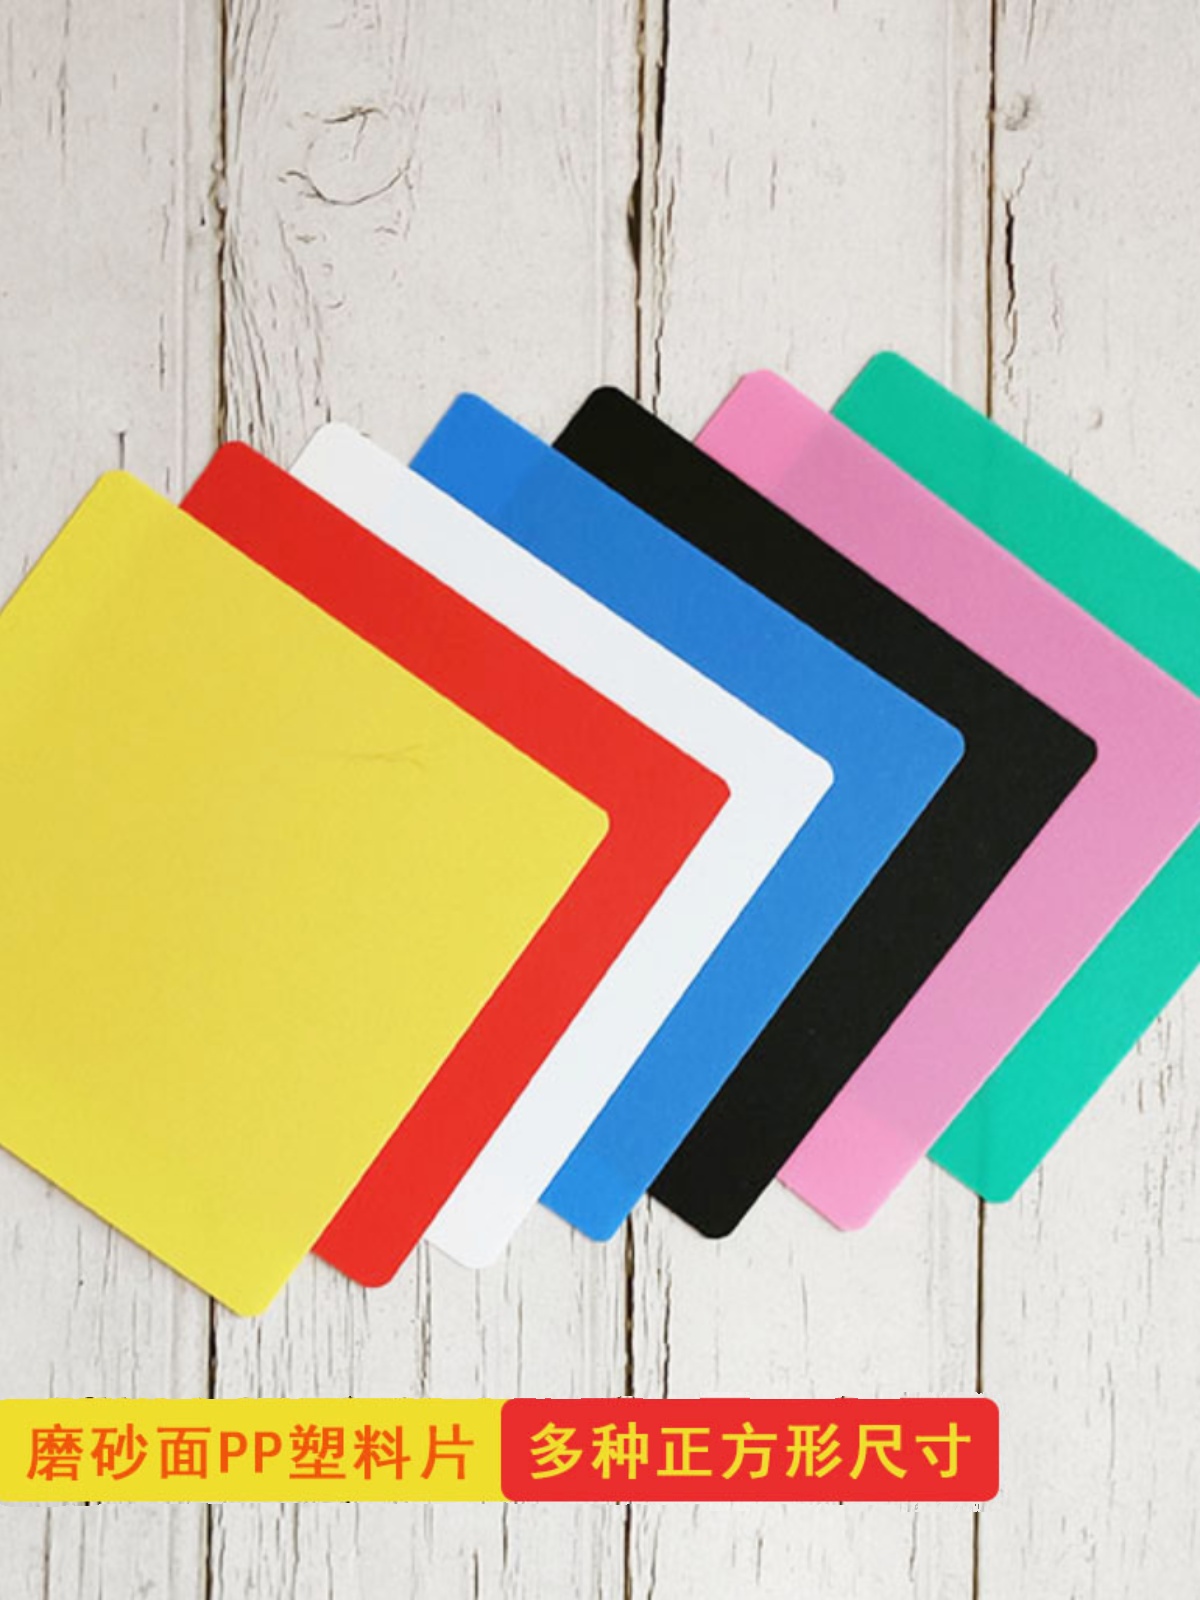 磨砂塑料卡片正方形尺寸双面彩色可擦写循环使用黑红白蓝绿粉黄卡